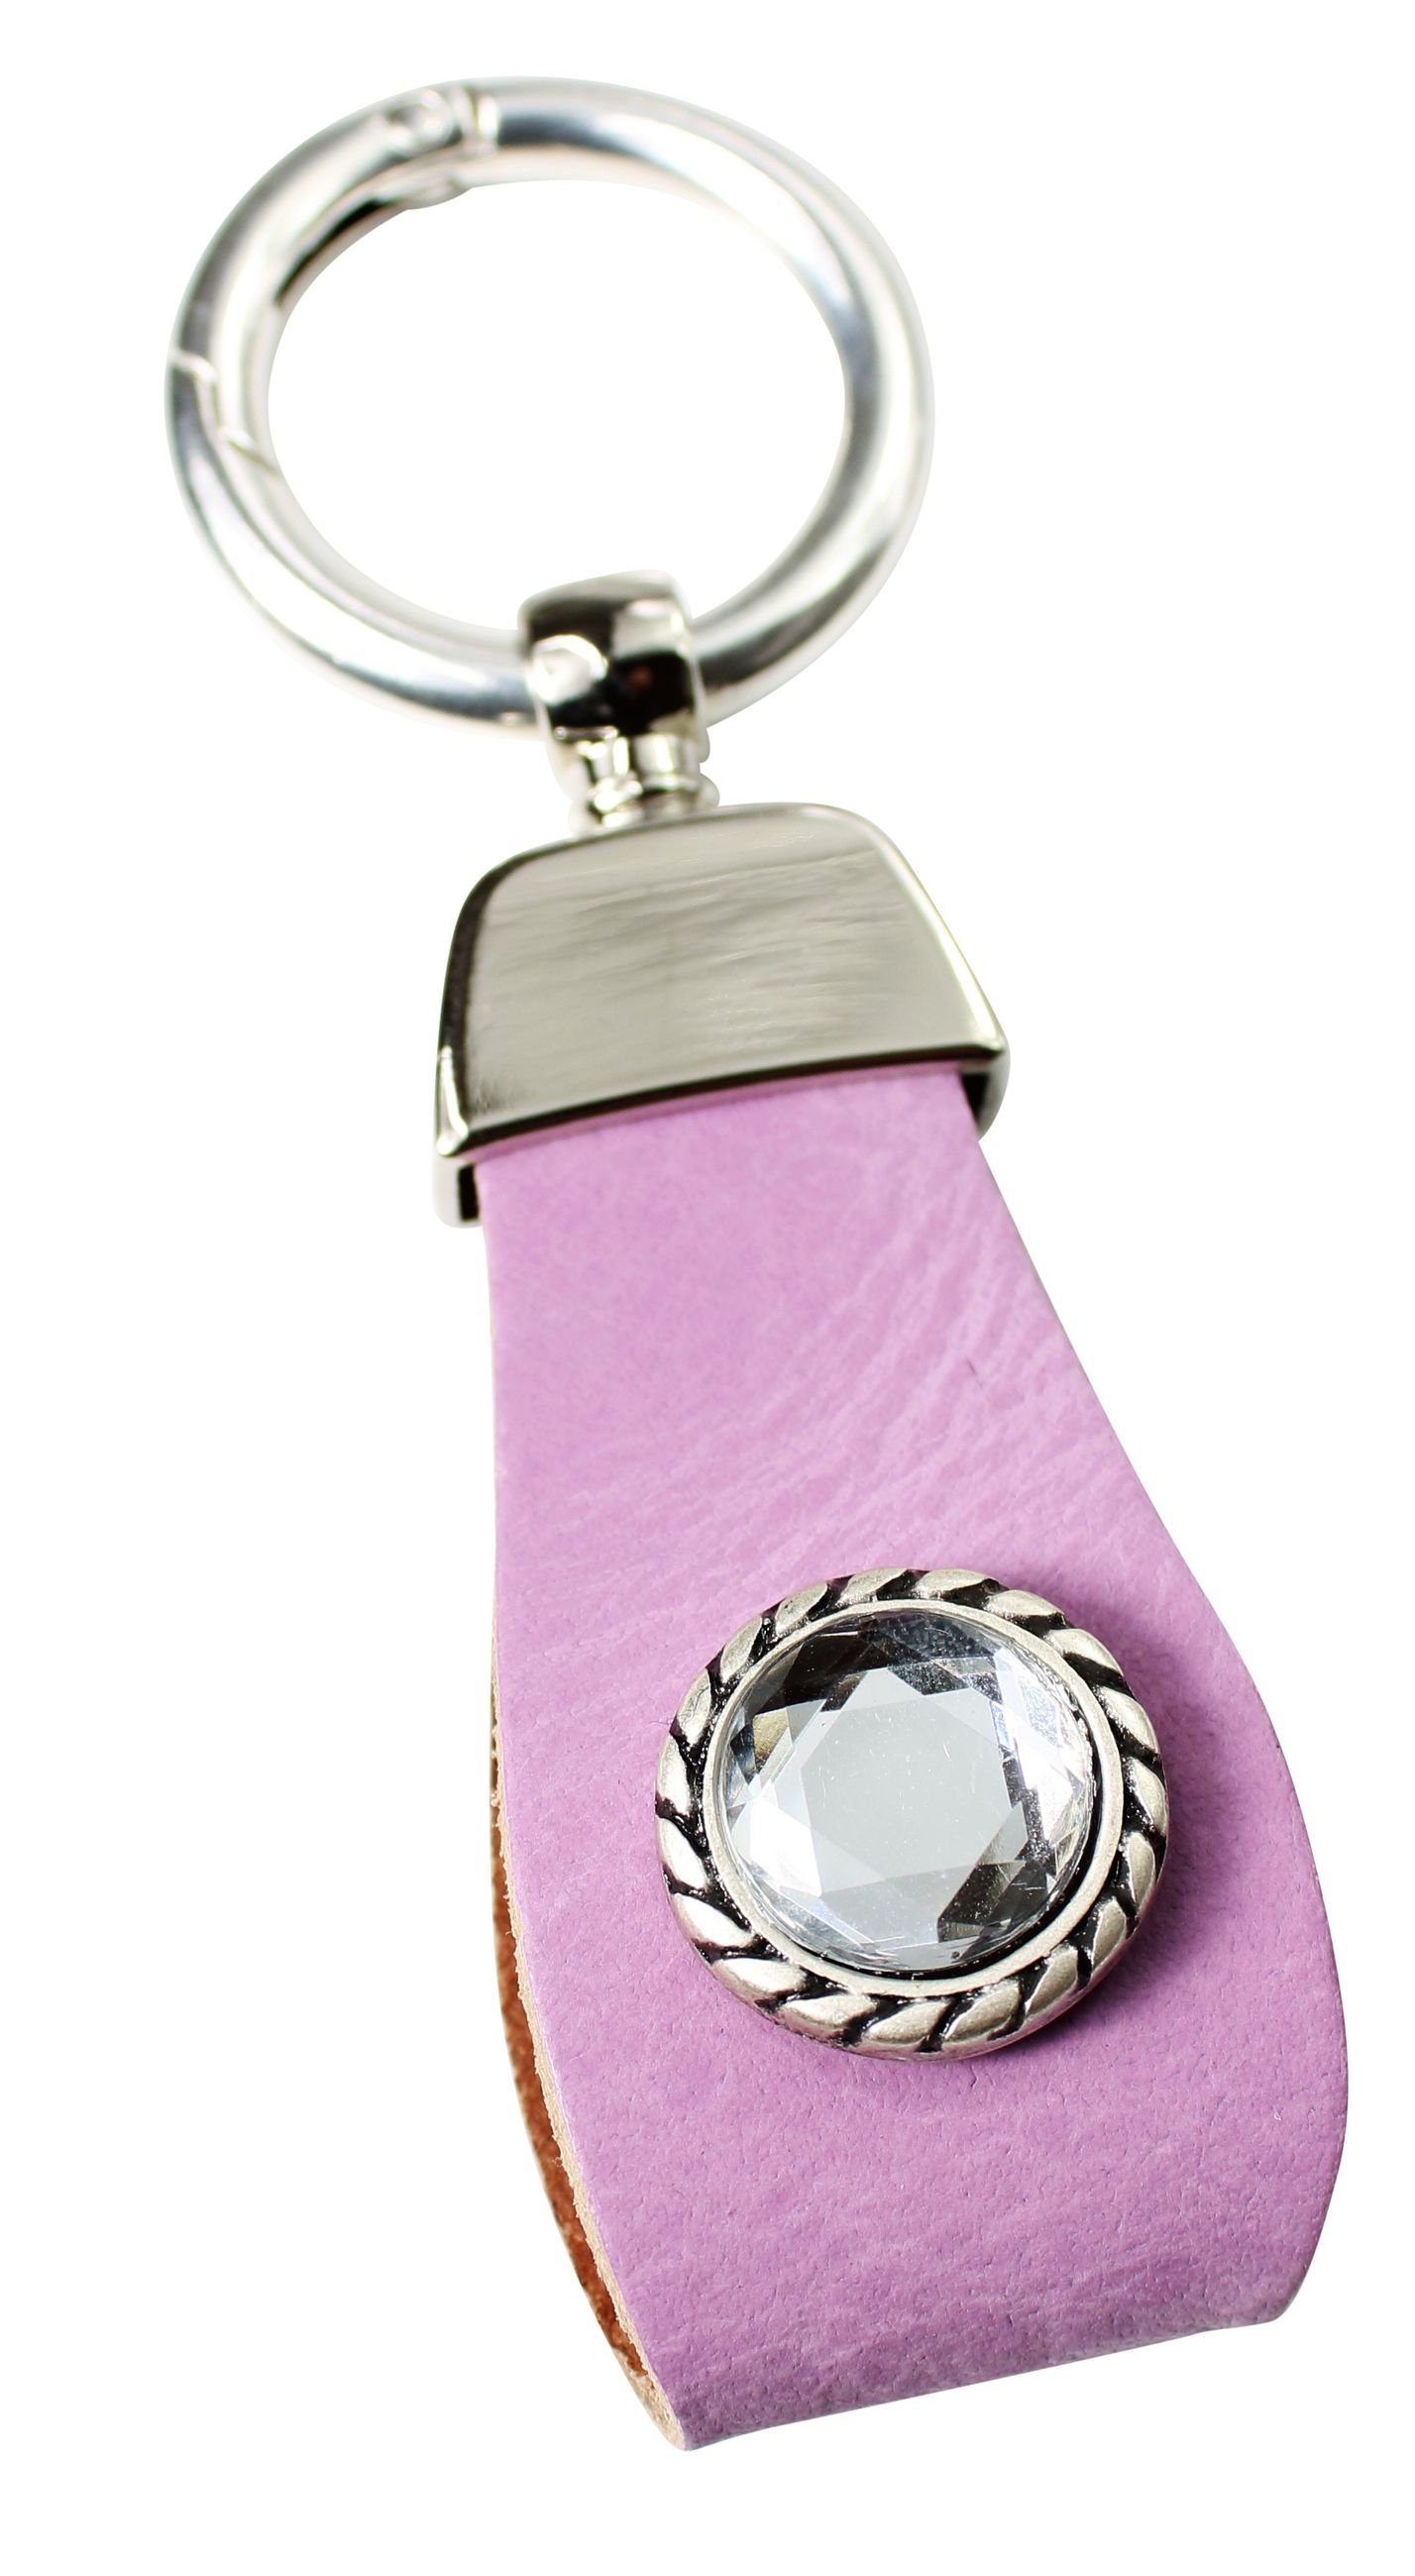 FRONHOFER Schlüsselanhänger 18881, Schlüsselanhänger aus Leder mit Strass Zierteil in tollen Farben Lavendel